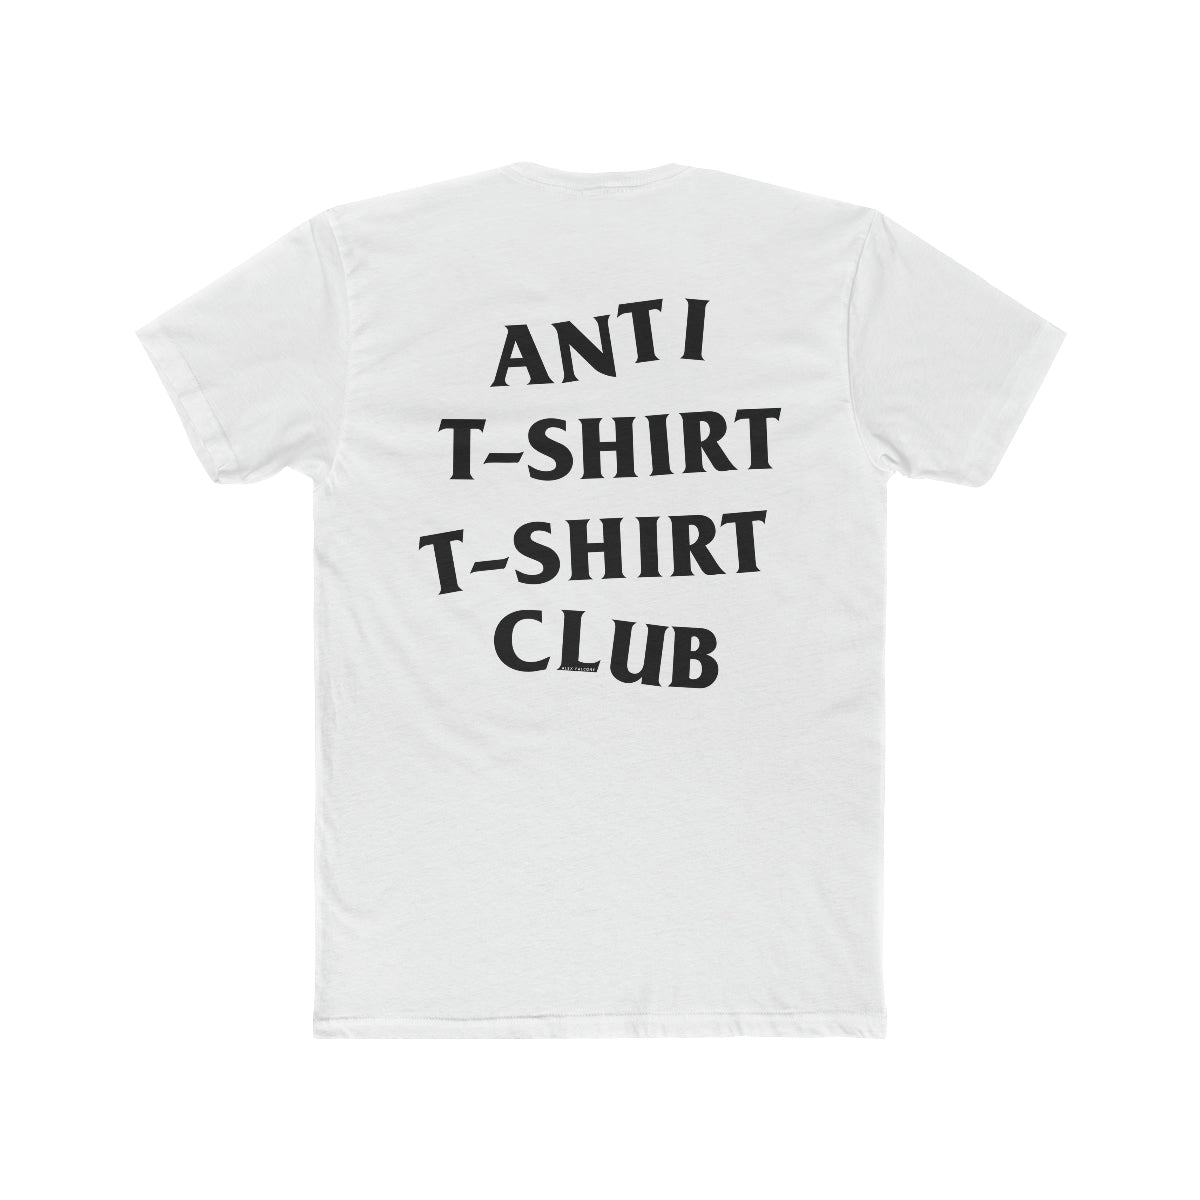 Anti T-shirt T-shirt Club